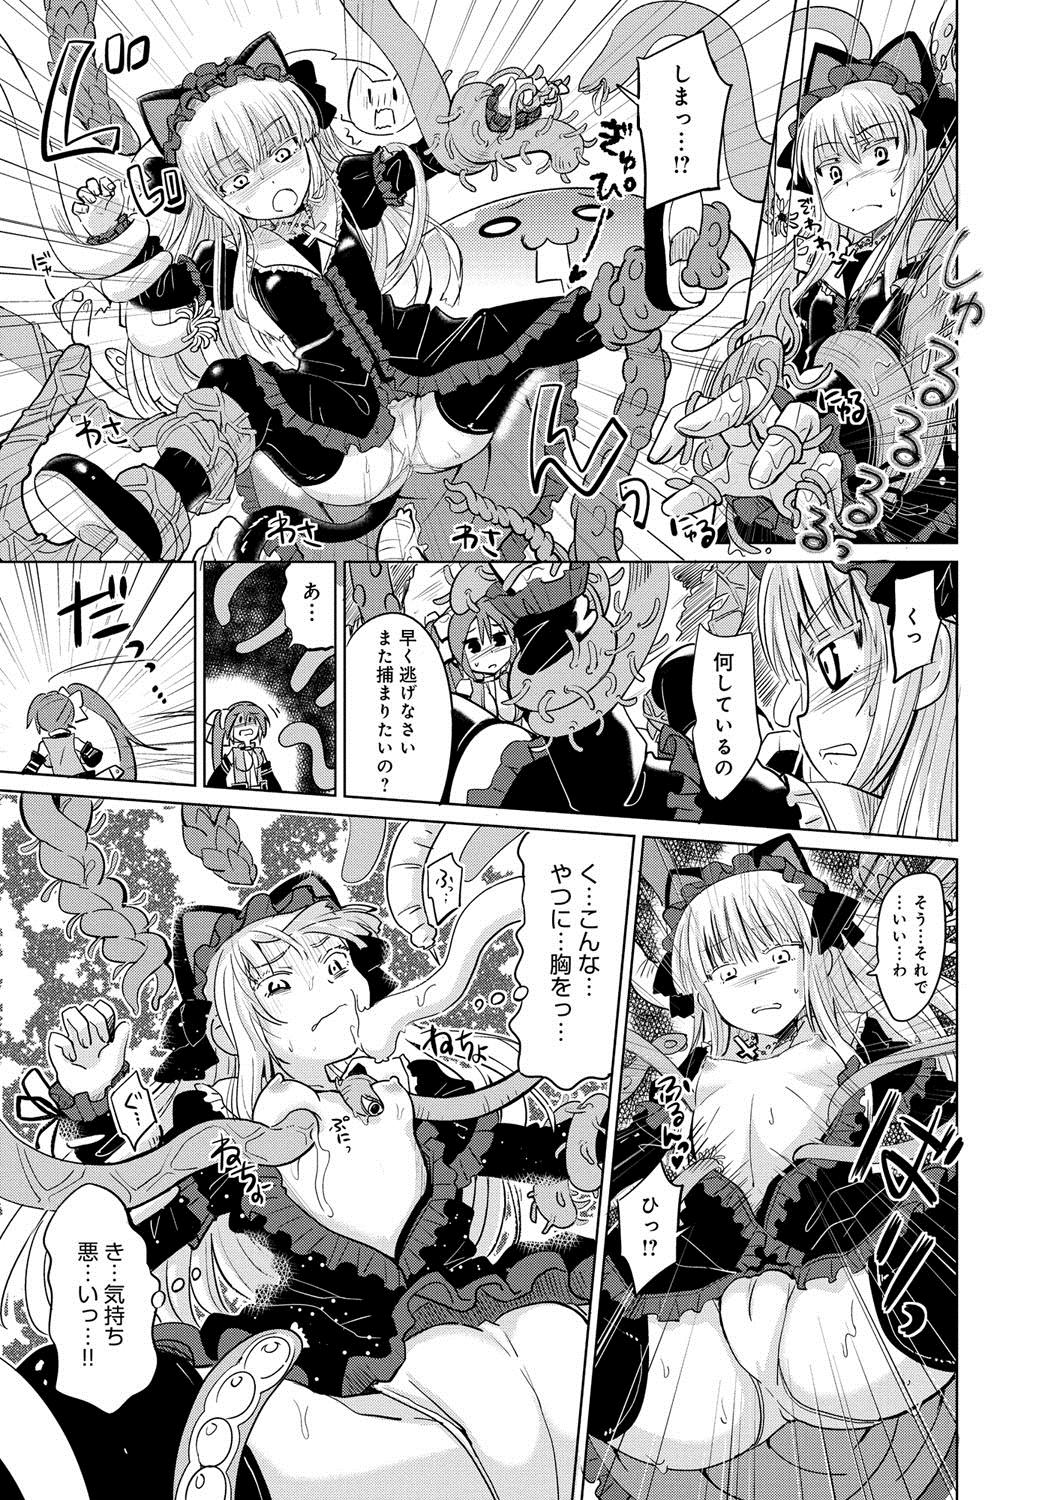 [Anthology] Lord of Valkyrie Adult - Comic Anthology R18 Handakara Saigomade... Mou, Kishi-sama no Ecchi♪ 69